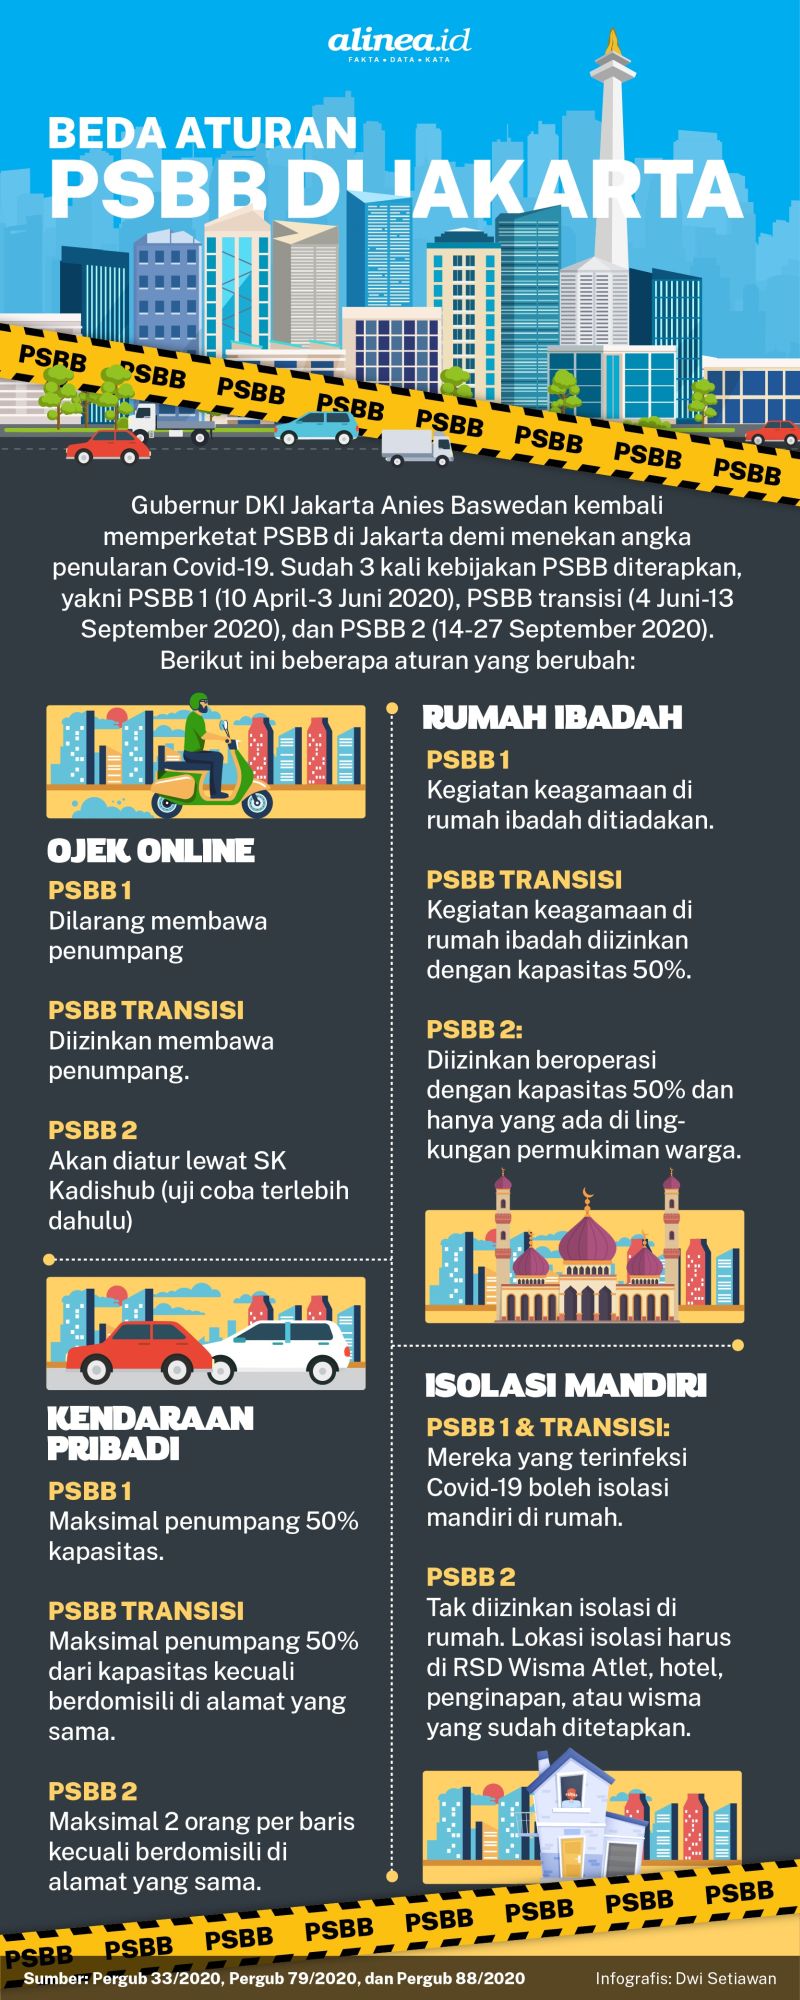 Infografik aturan PSBB. Alinea.id/Dwi Setiawan.